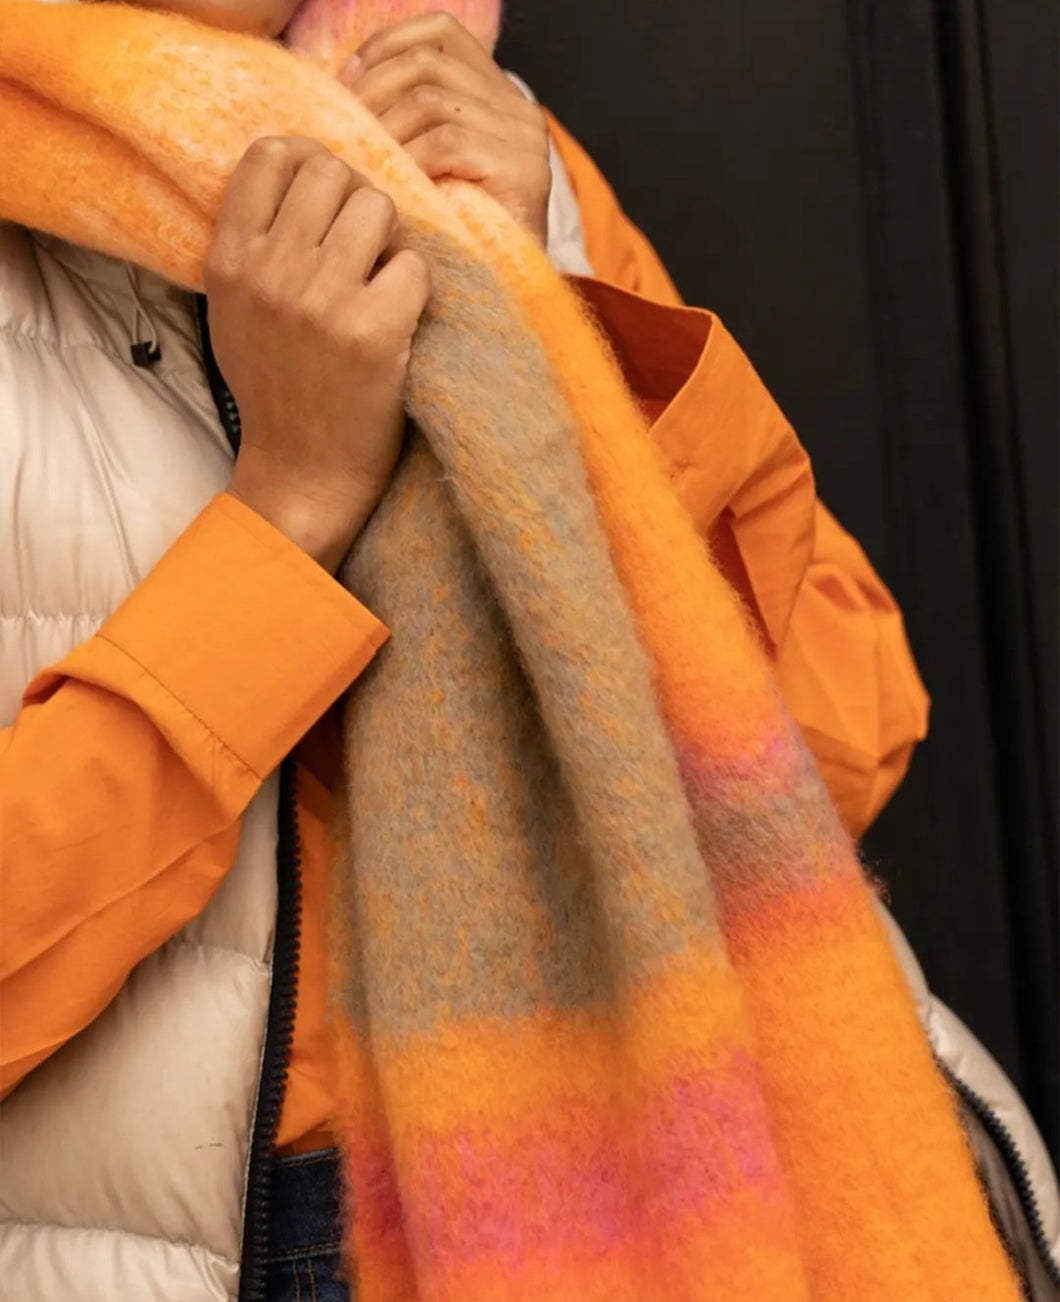 Oranje Sjaal, een prachtige sjaal van Moment Amsterdam referentie 53.312-23 in de kleur warm oranje met afmeting  180cmx35cm. Met deze sjaal blijf je lekker warm en maak jij jouw outfit compleet.